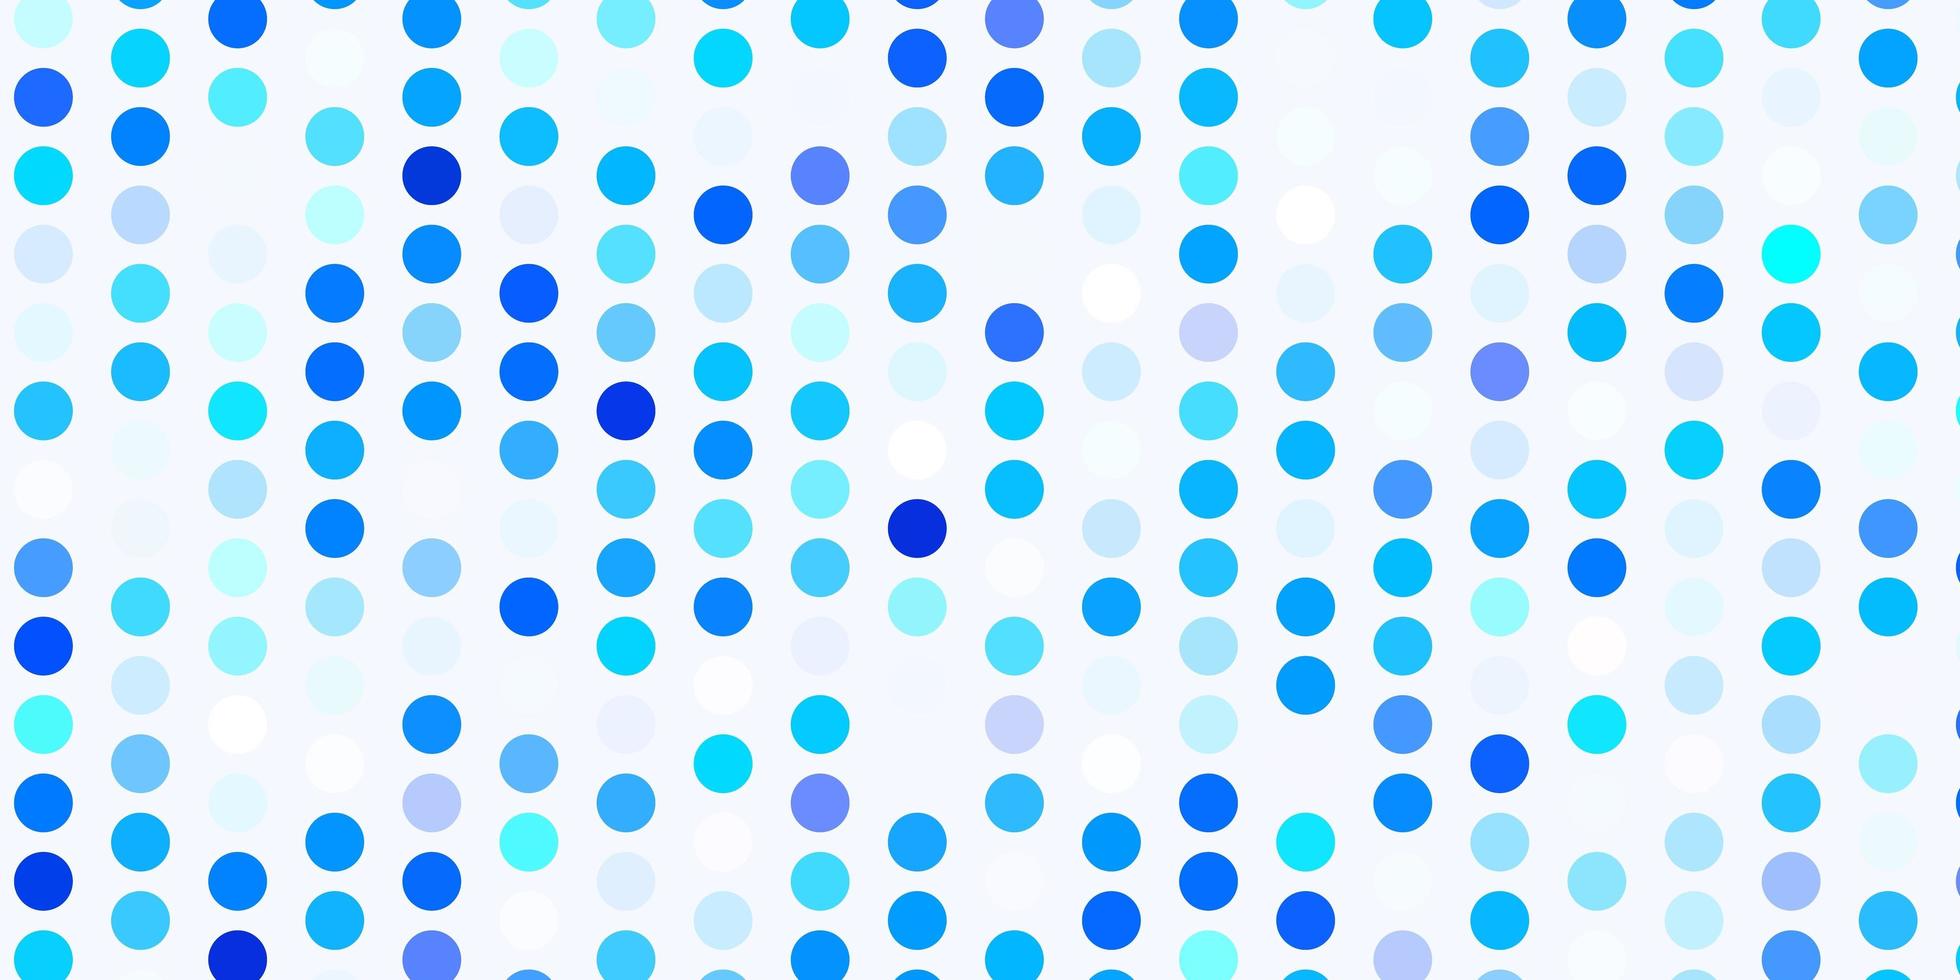 padrão de vetor azul claro com esferas